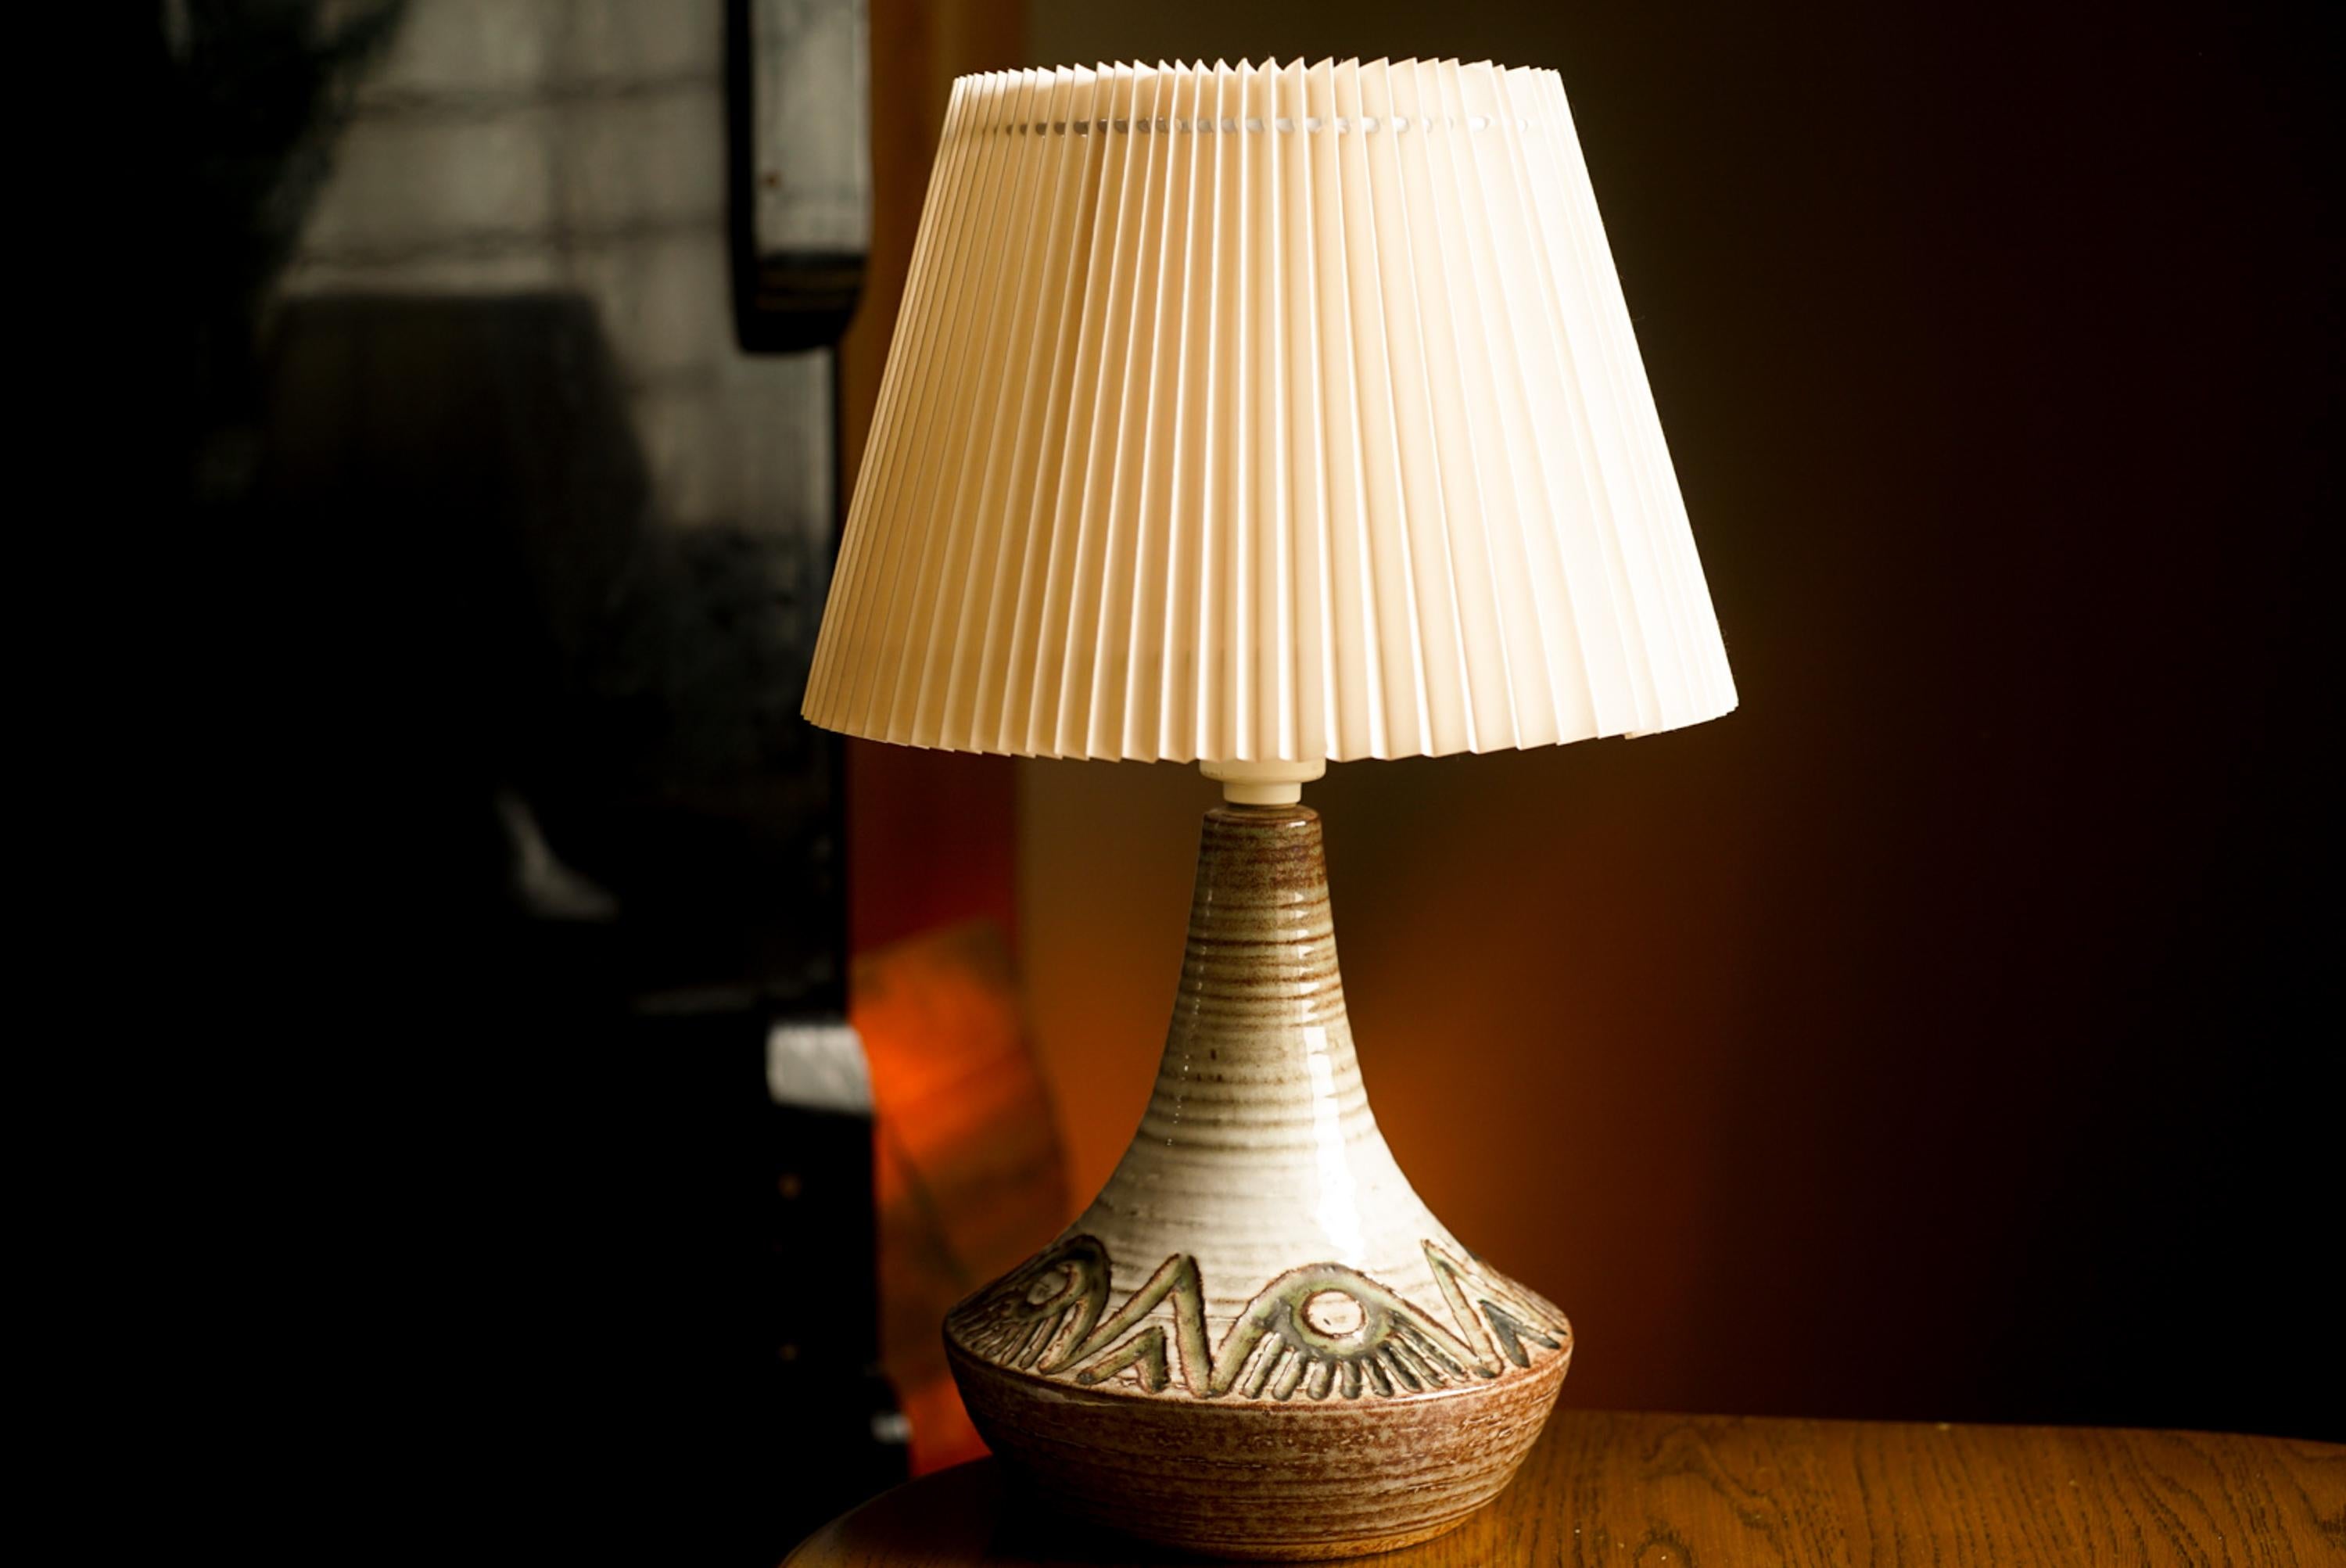 Eine Tischlampe aus Steingut, handgefertigt von Noomi Backhausen und Poul Brandborg für die dänische Firma Søholm auf der Insel Bornholm in Dänemark in den 1960er Jahren.

Auf dem Sockel gestempelt und signiert.

Verkauft ohne Lampenschirm. Höhe